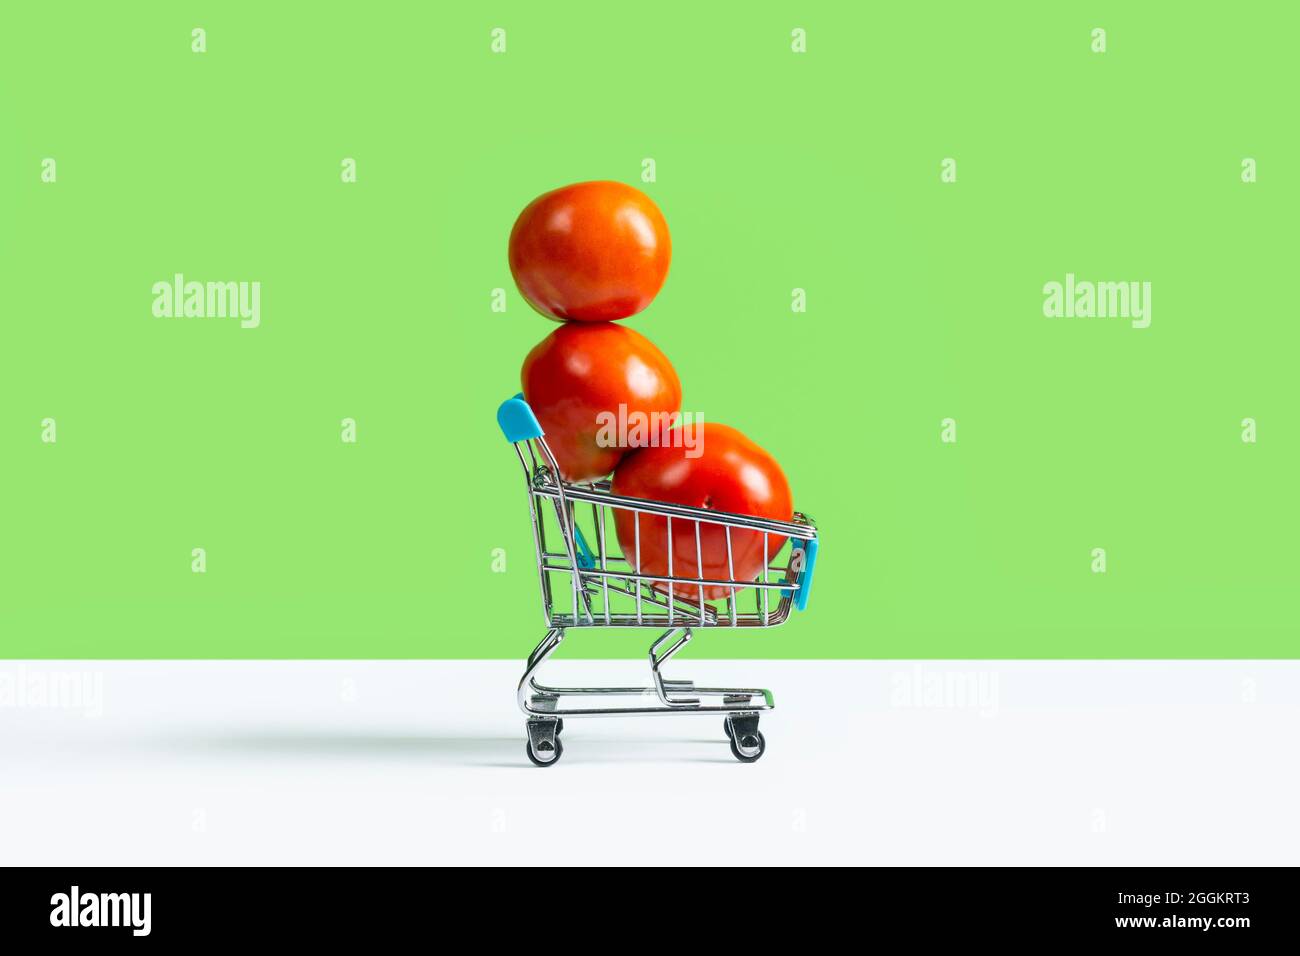 Carrello giocattolo o carrello pieno di grandi pomodori rossi isolato su sfondo verde. Concetto di vendita del raccolto autunnale. Banner con spazio di copia Foto Stock